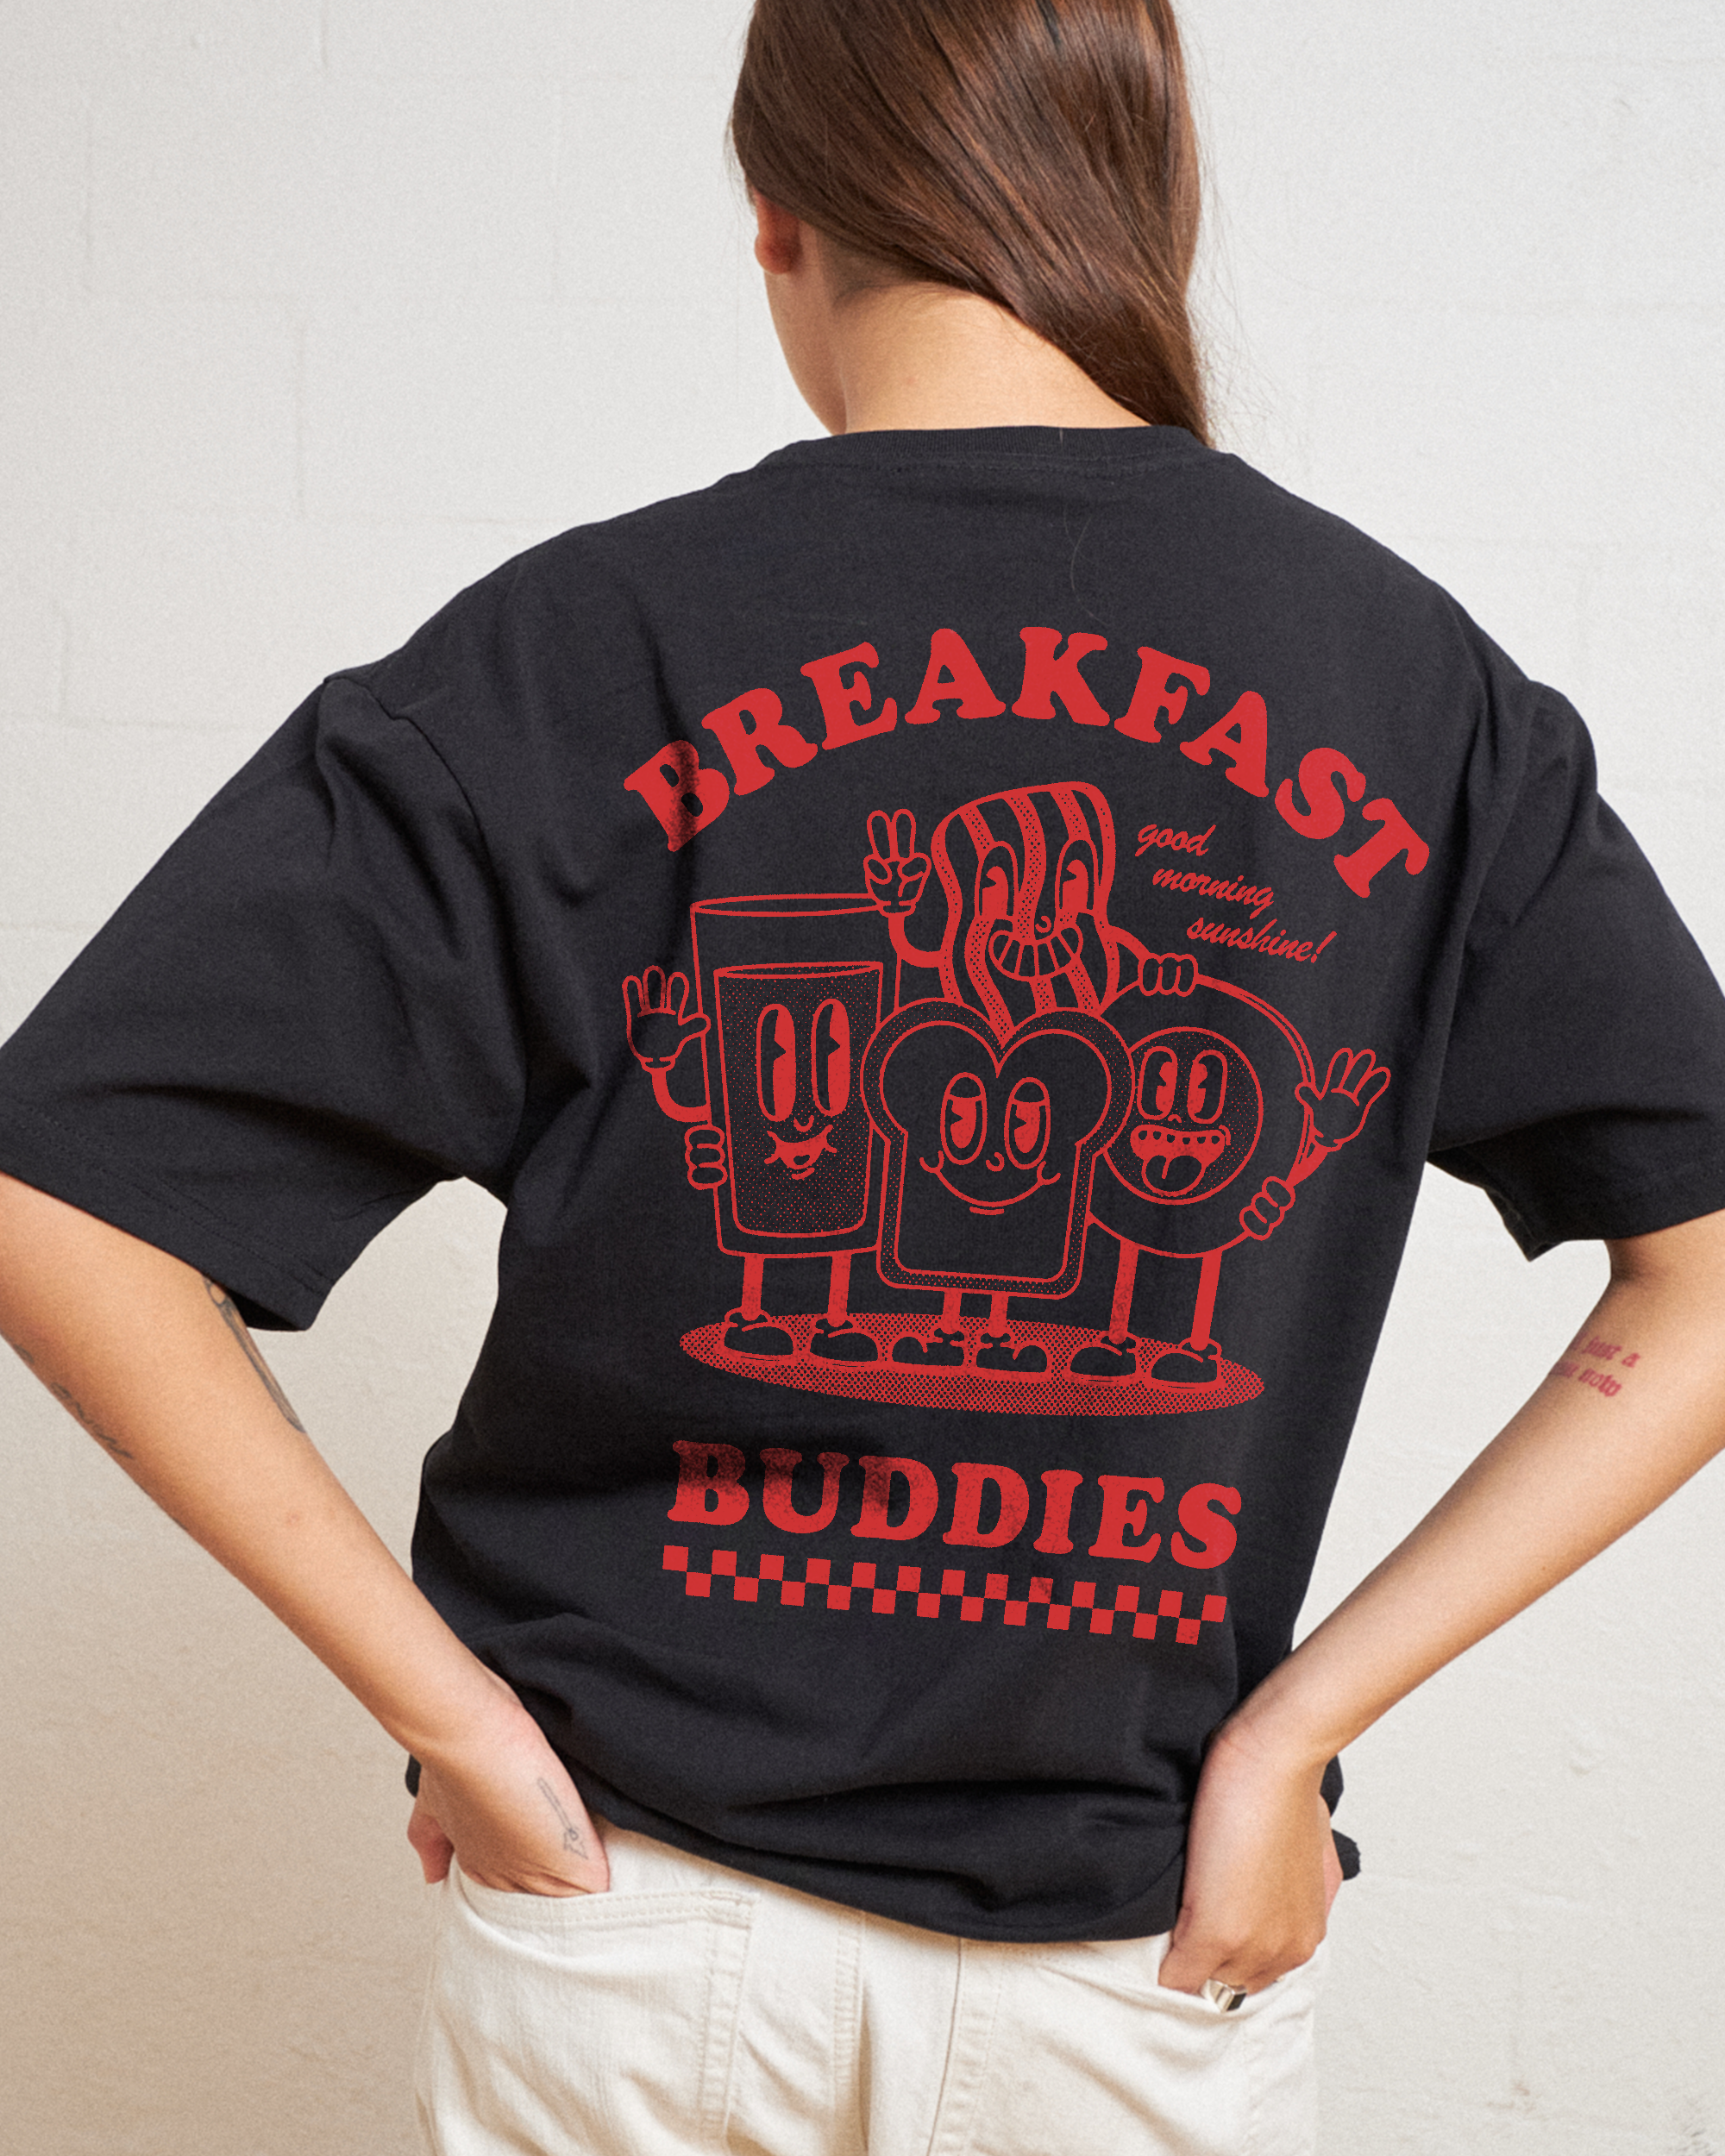 Breakfast Buddies T-Shirt